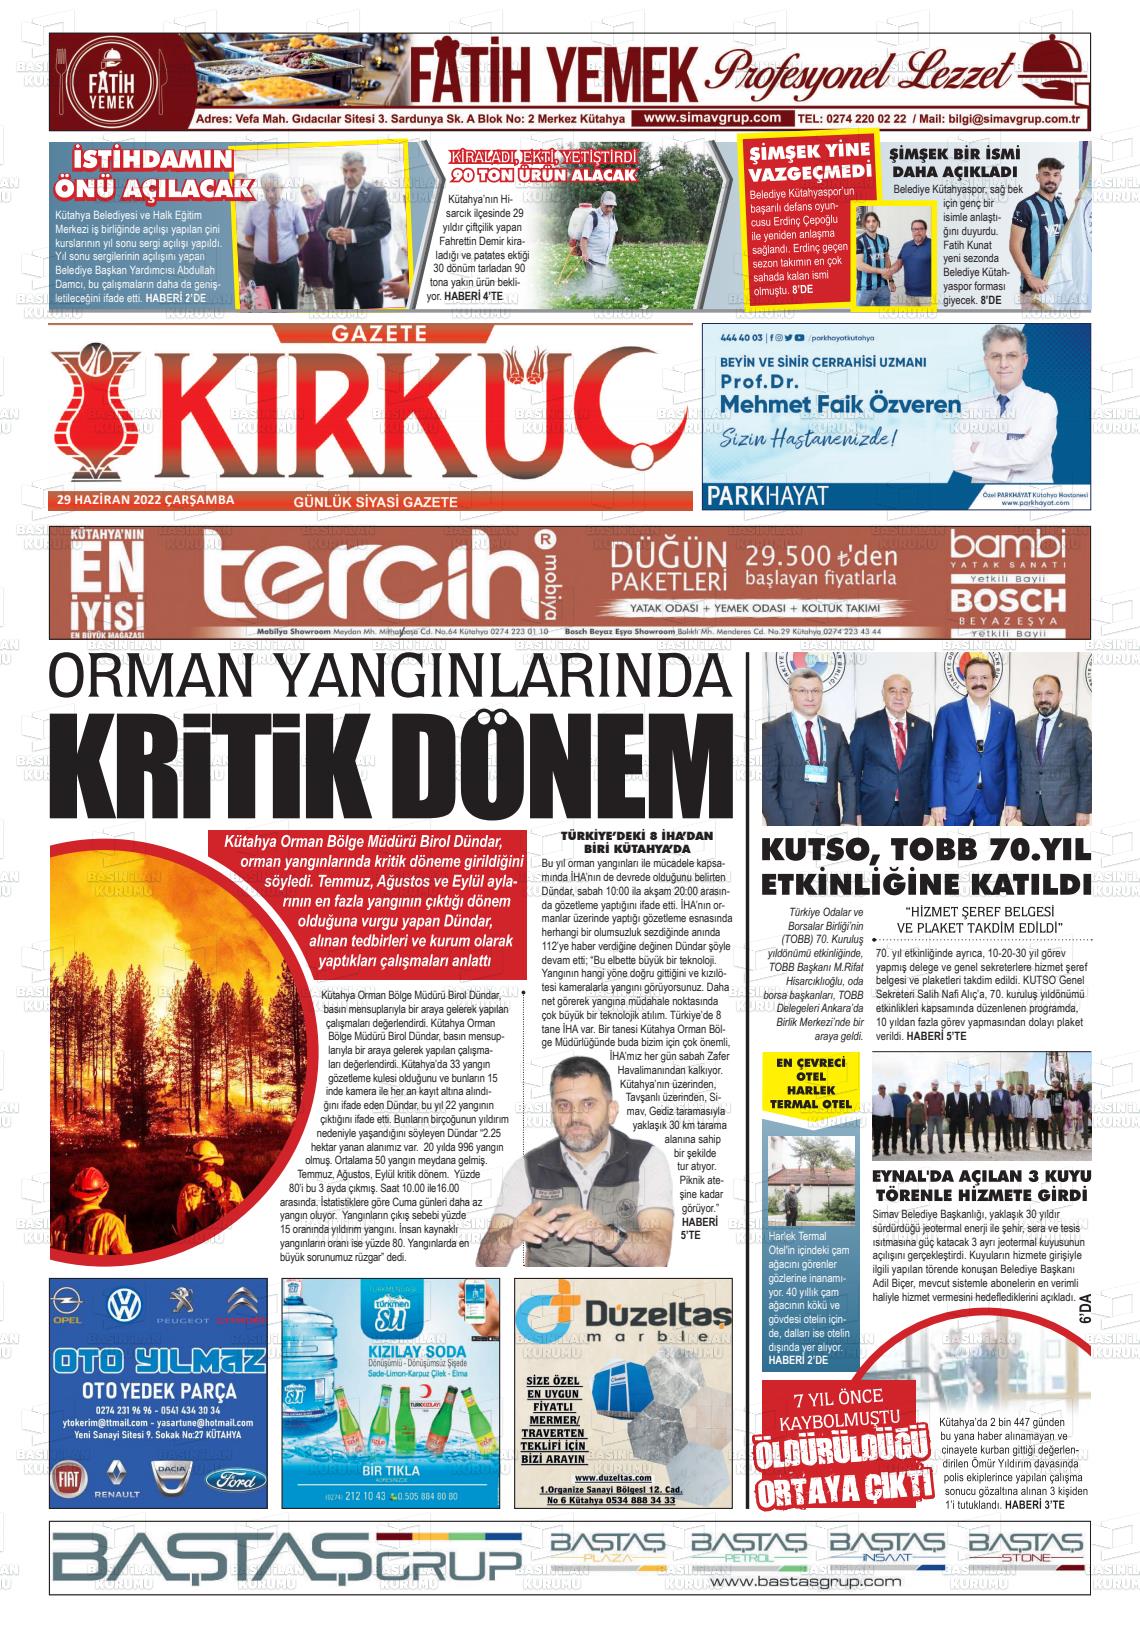 29 Haziran 2022 Gazete Kırküç Gazete Manşeti